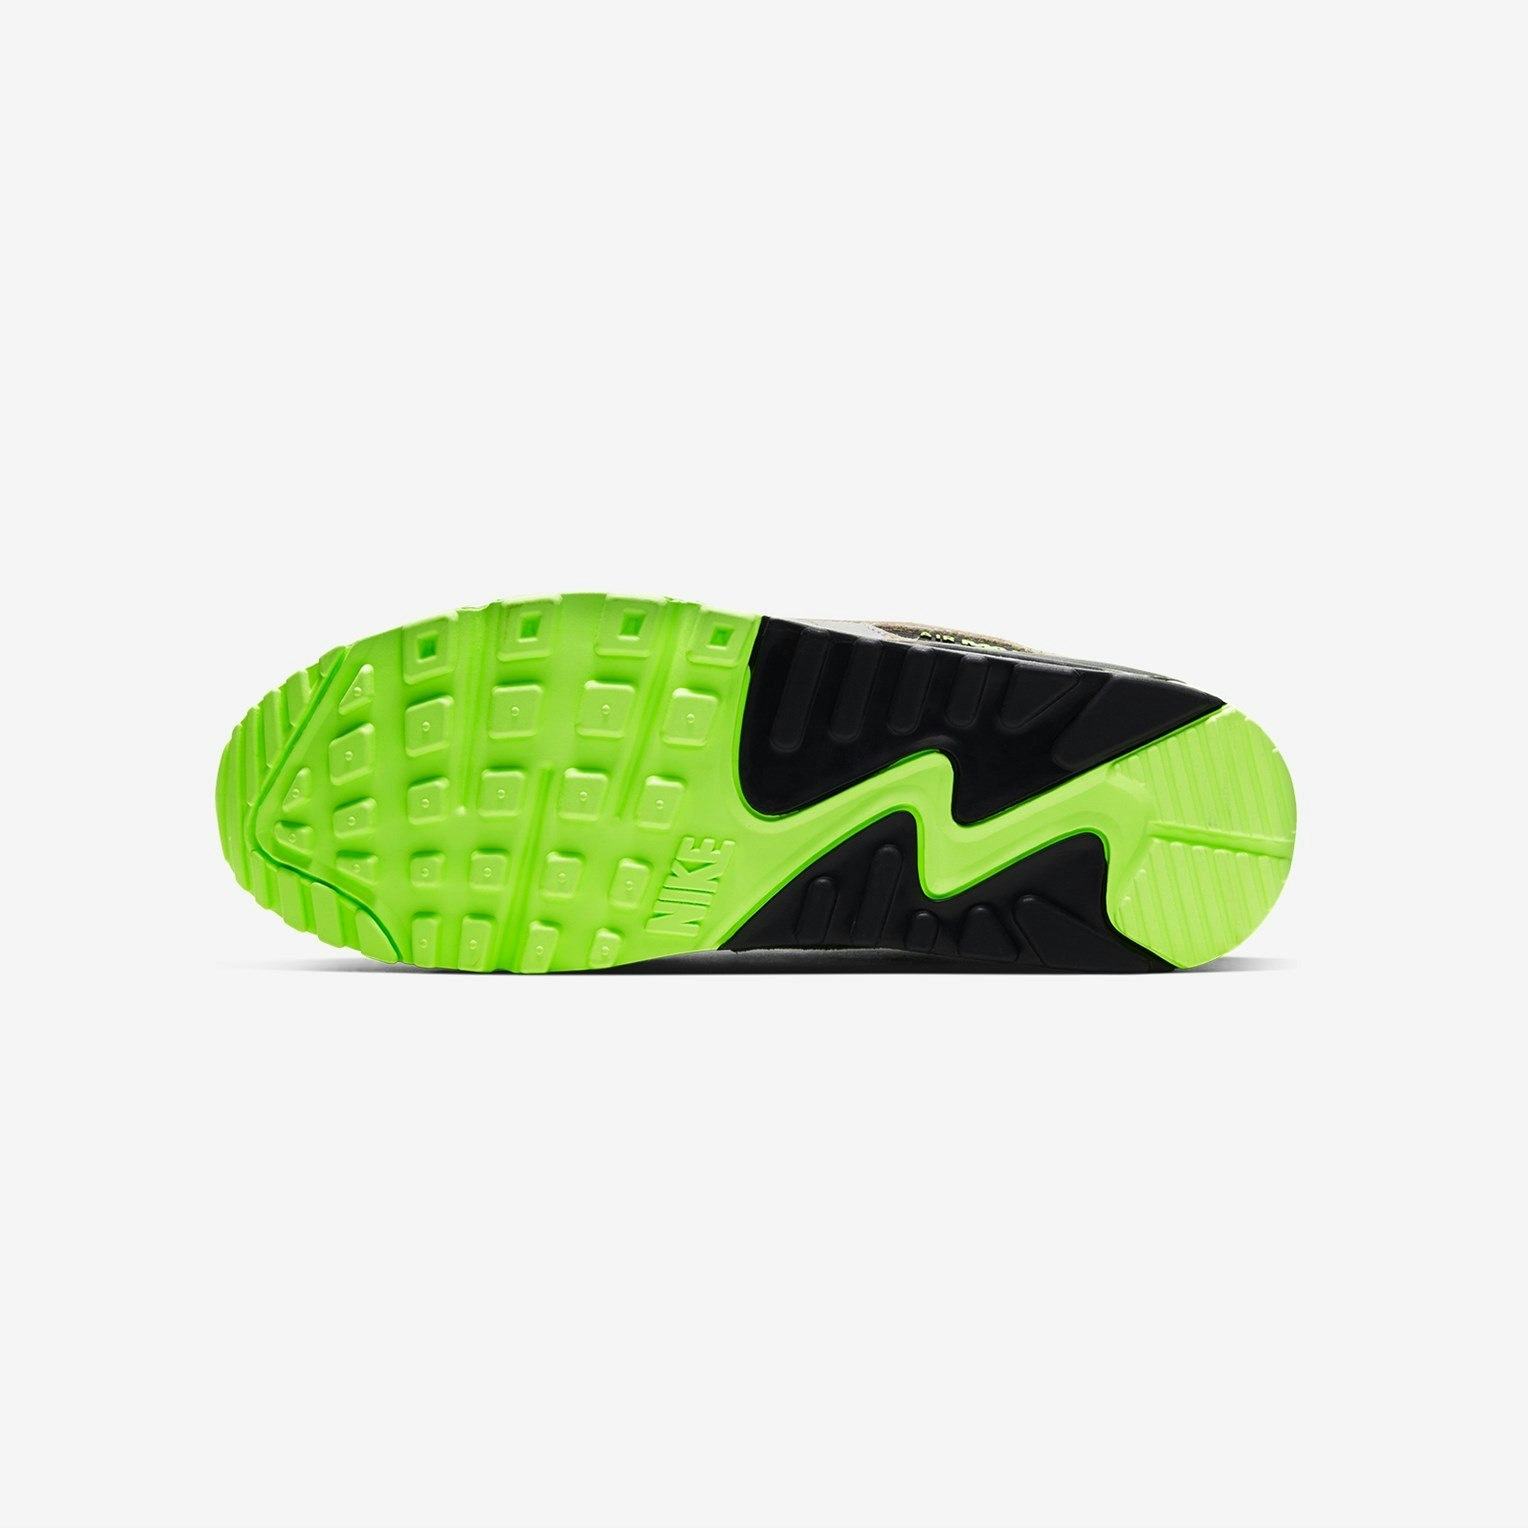 Nike Air Max 90 SP "Green Camo"